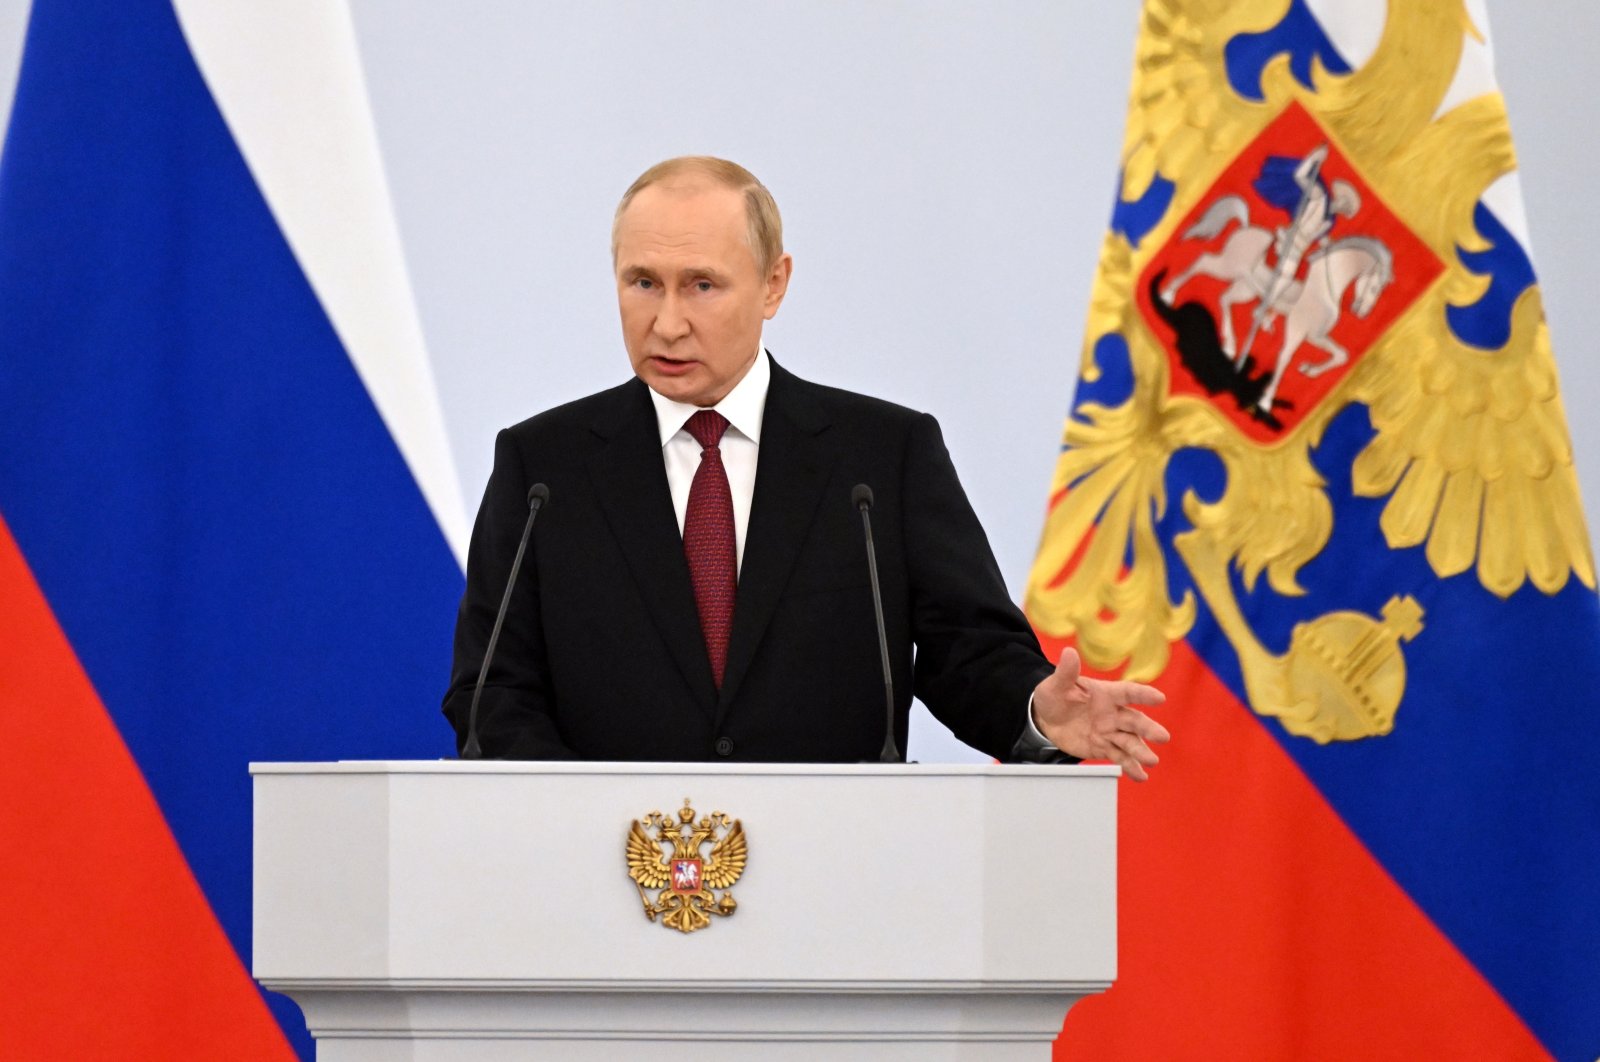 Putin mengumumkan pencaplokan wilayah Ukraina di tengah kritik